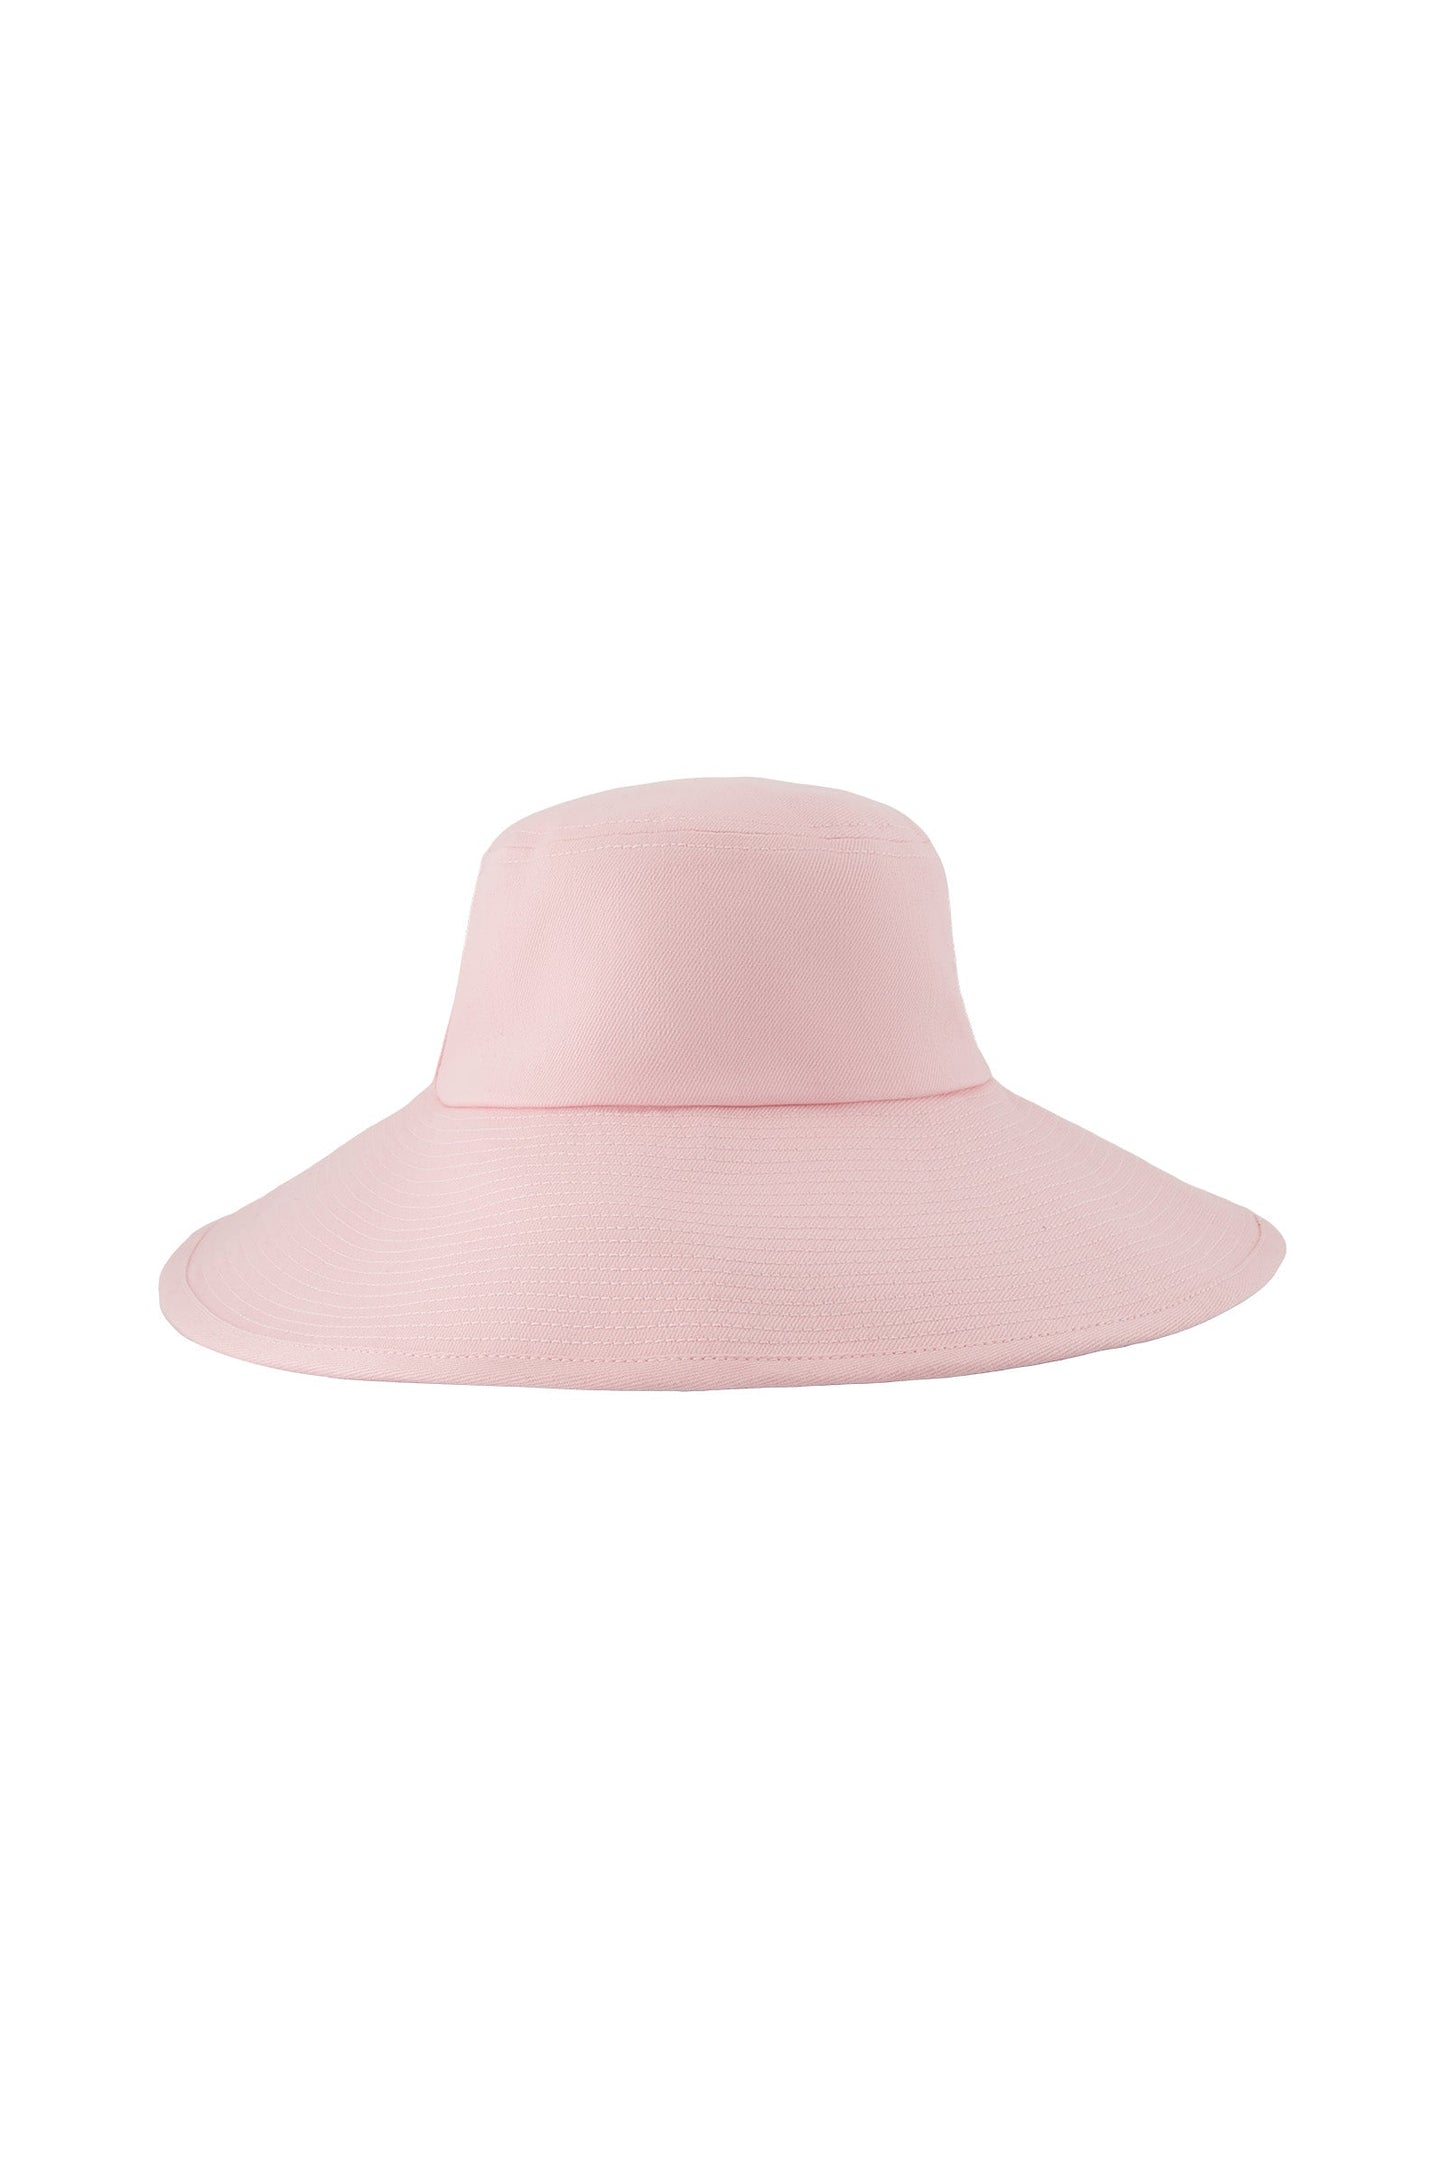 Parasol Hat